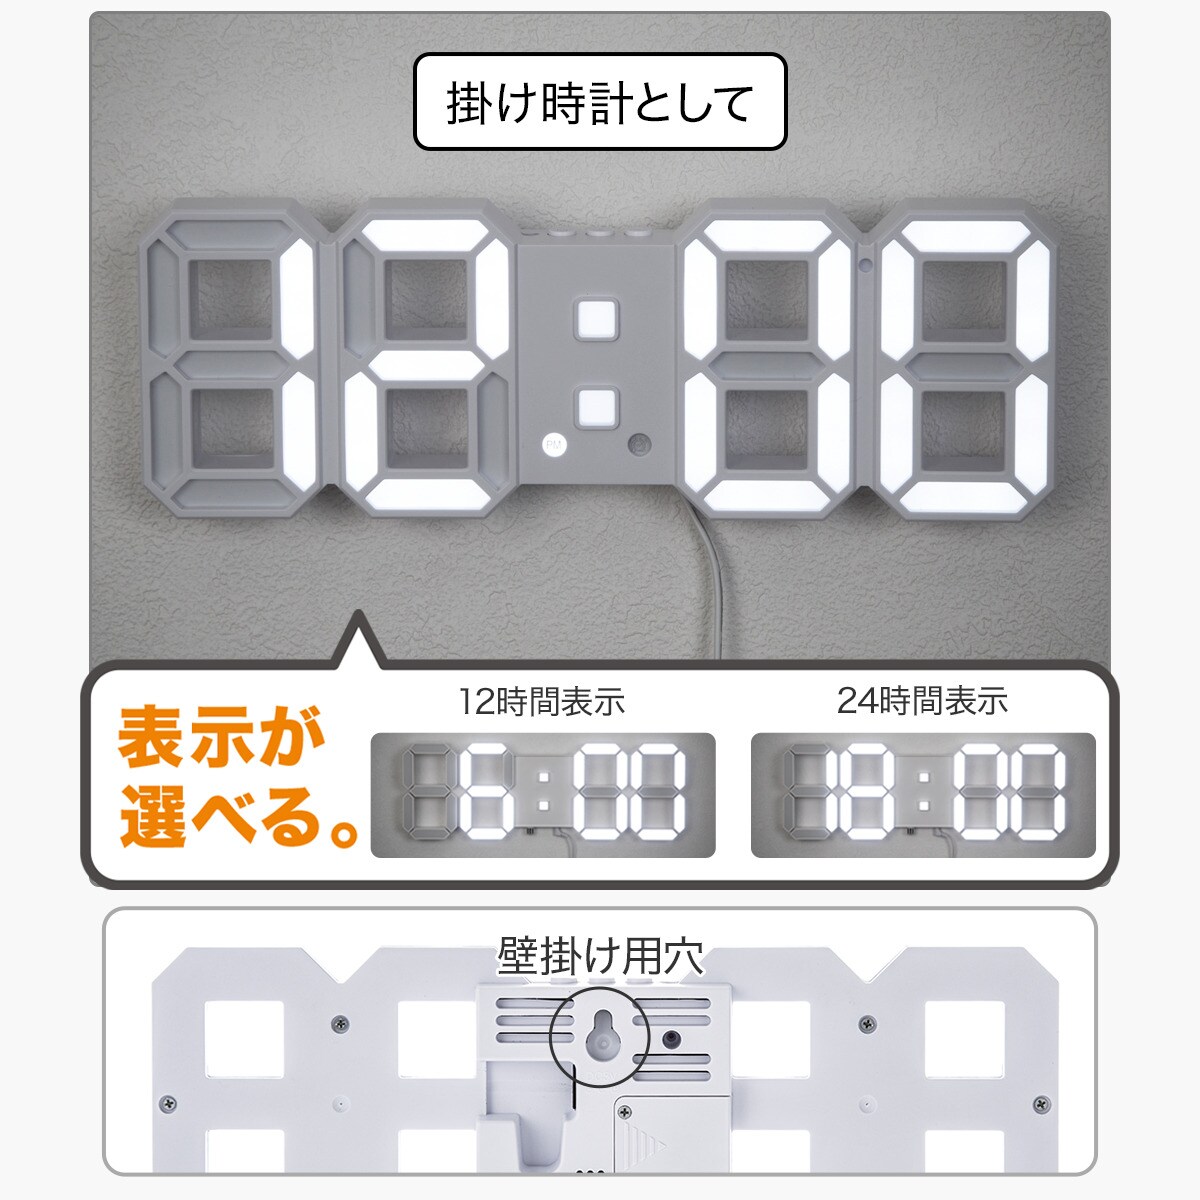 電波デジタル掛け置き兼用時計 (ホワイト 001RN) ニトリ 〔合計金額